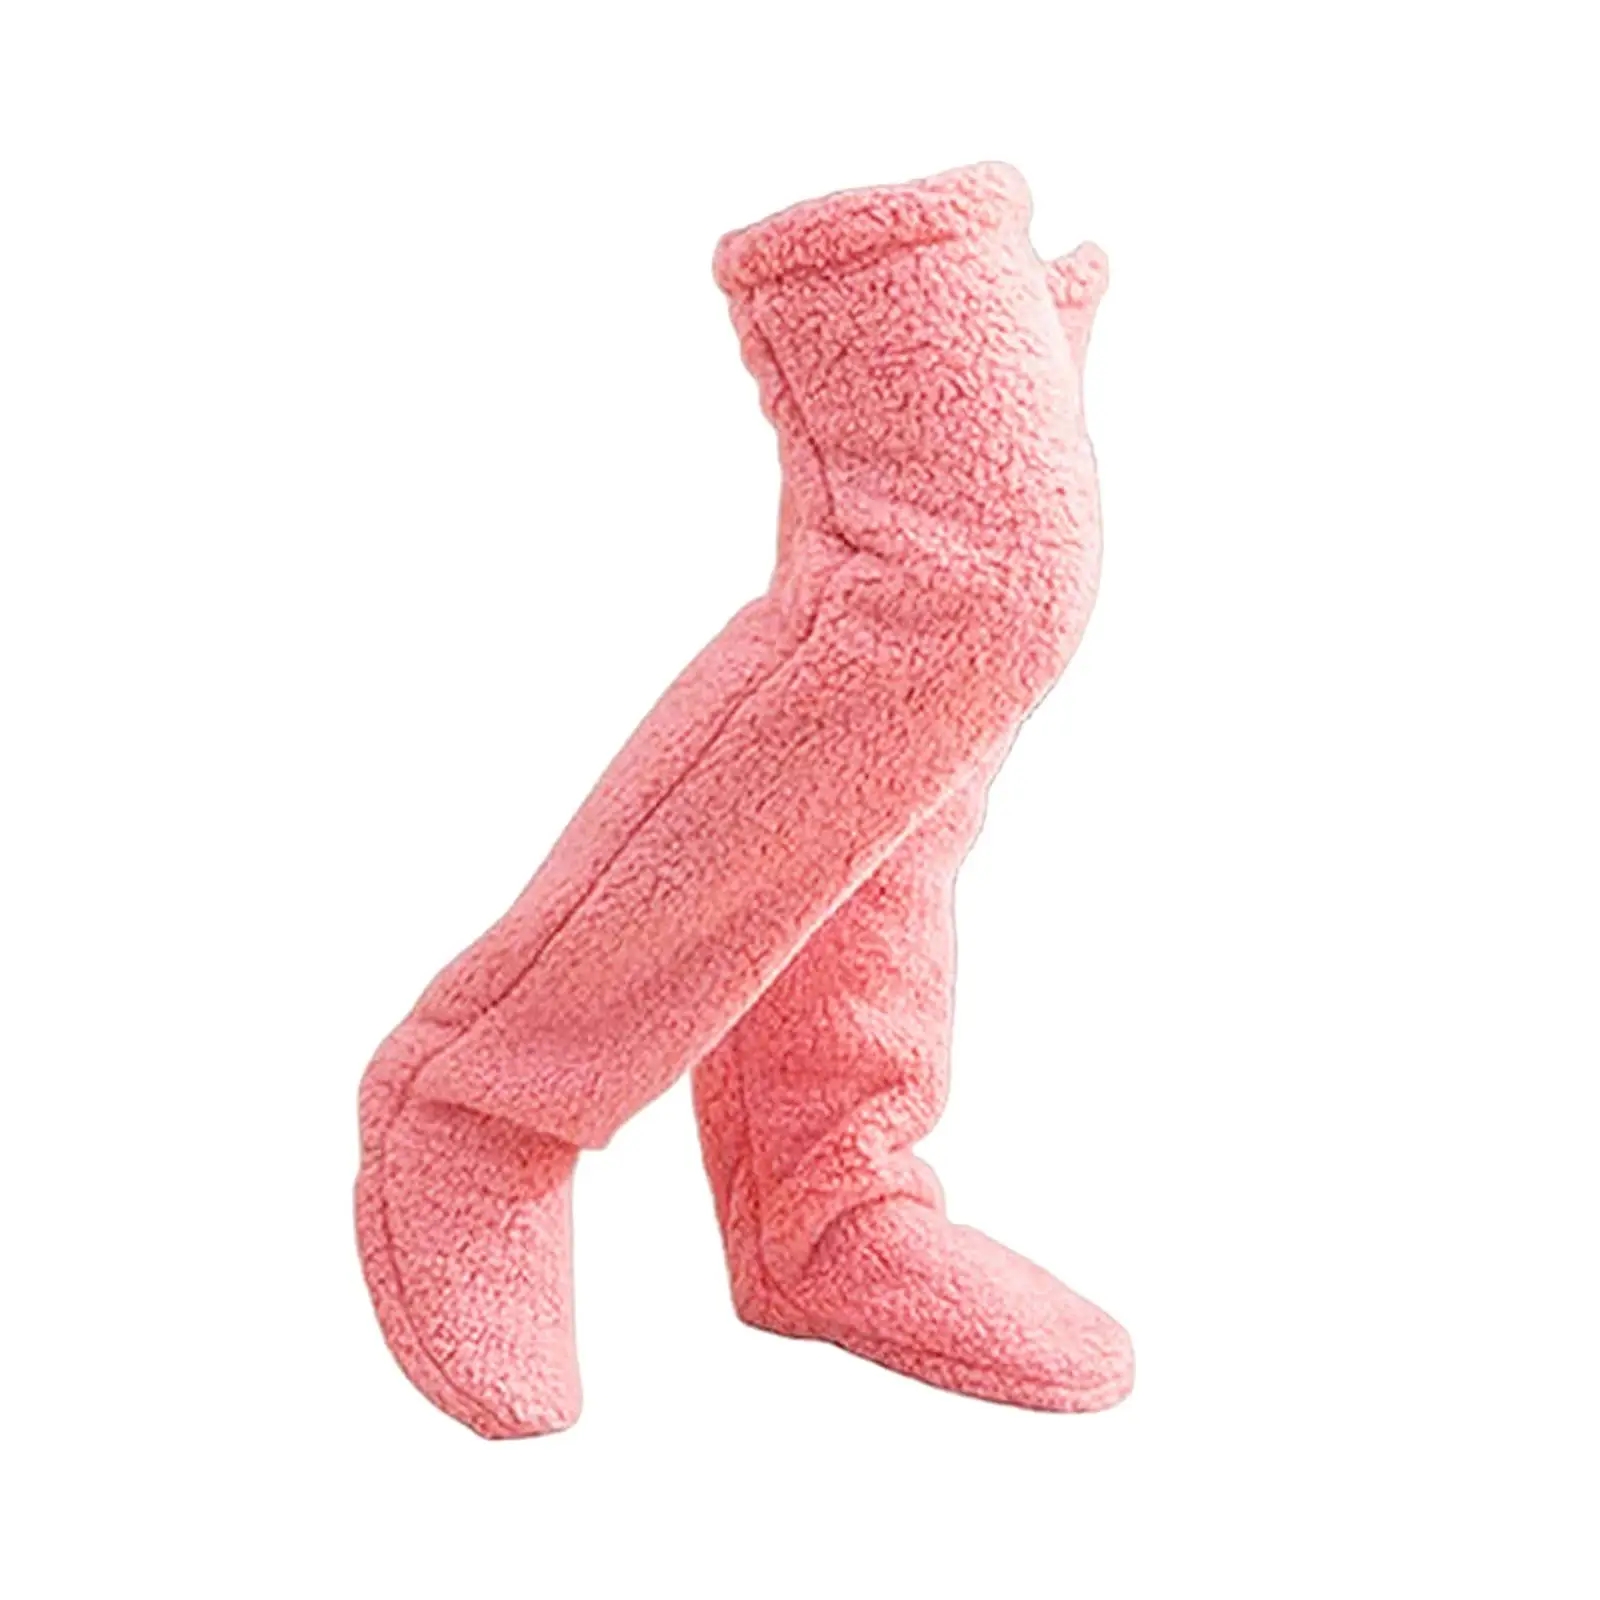 Plush Leg Warmers Thigh High Socks Costume Winter Sleeping Socks Slipper Stockings Over Knee High Socks for Apartment Bedroom